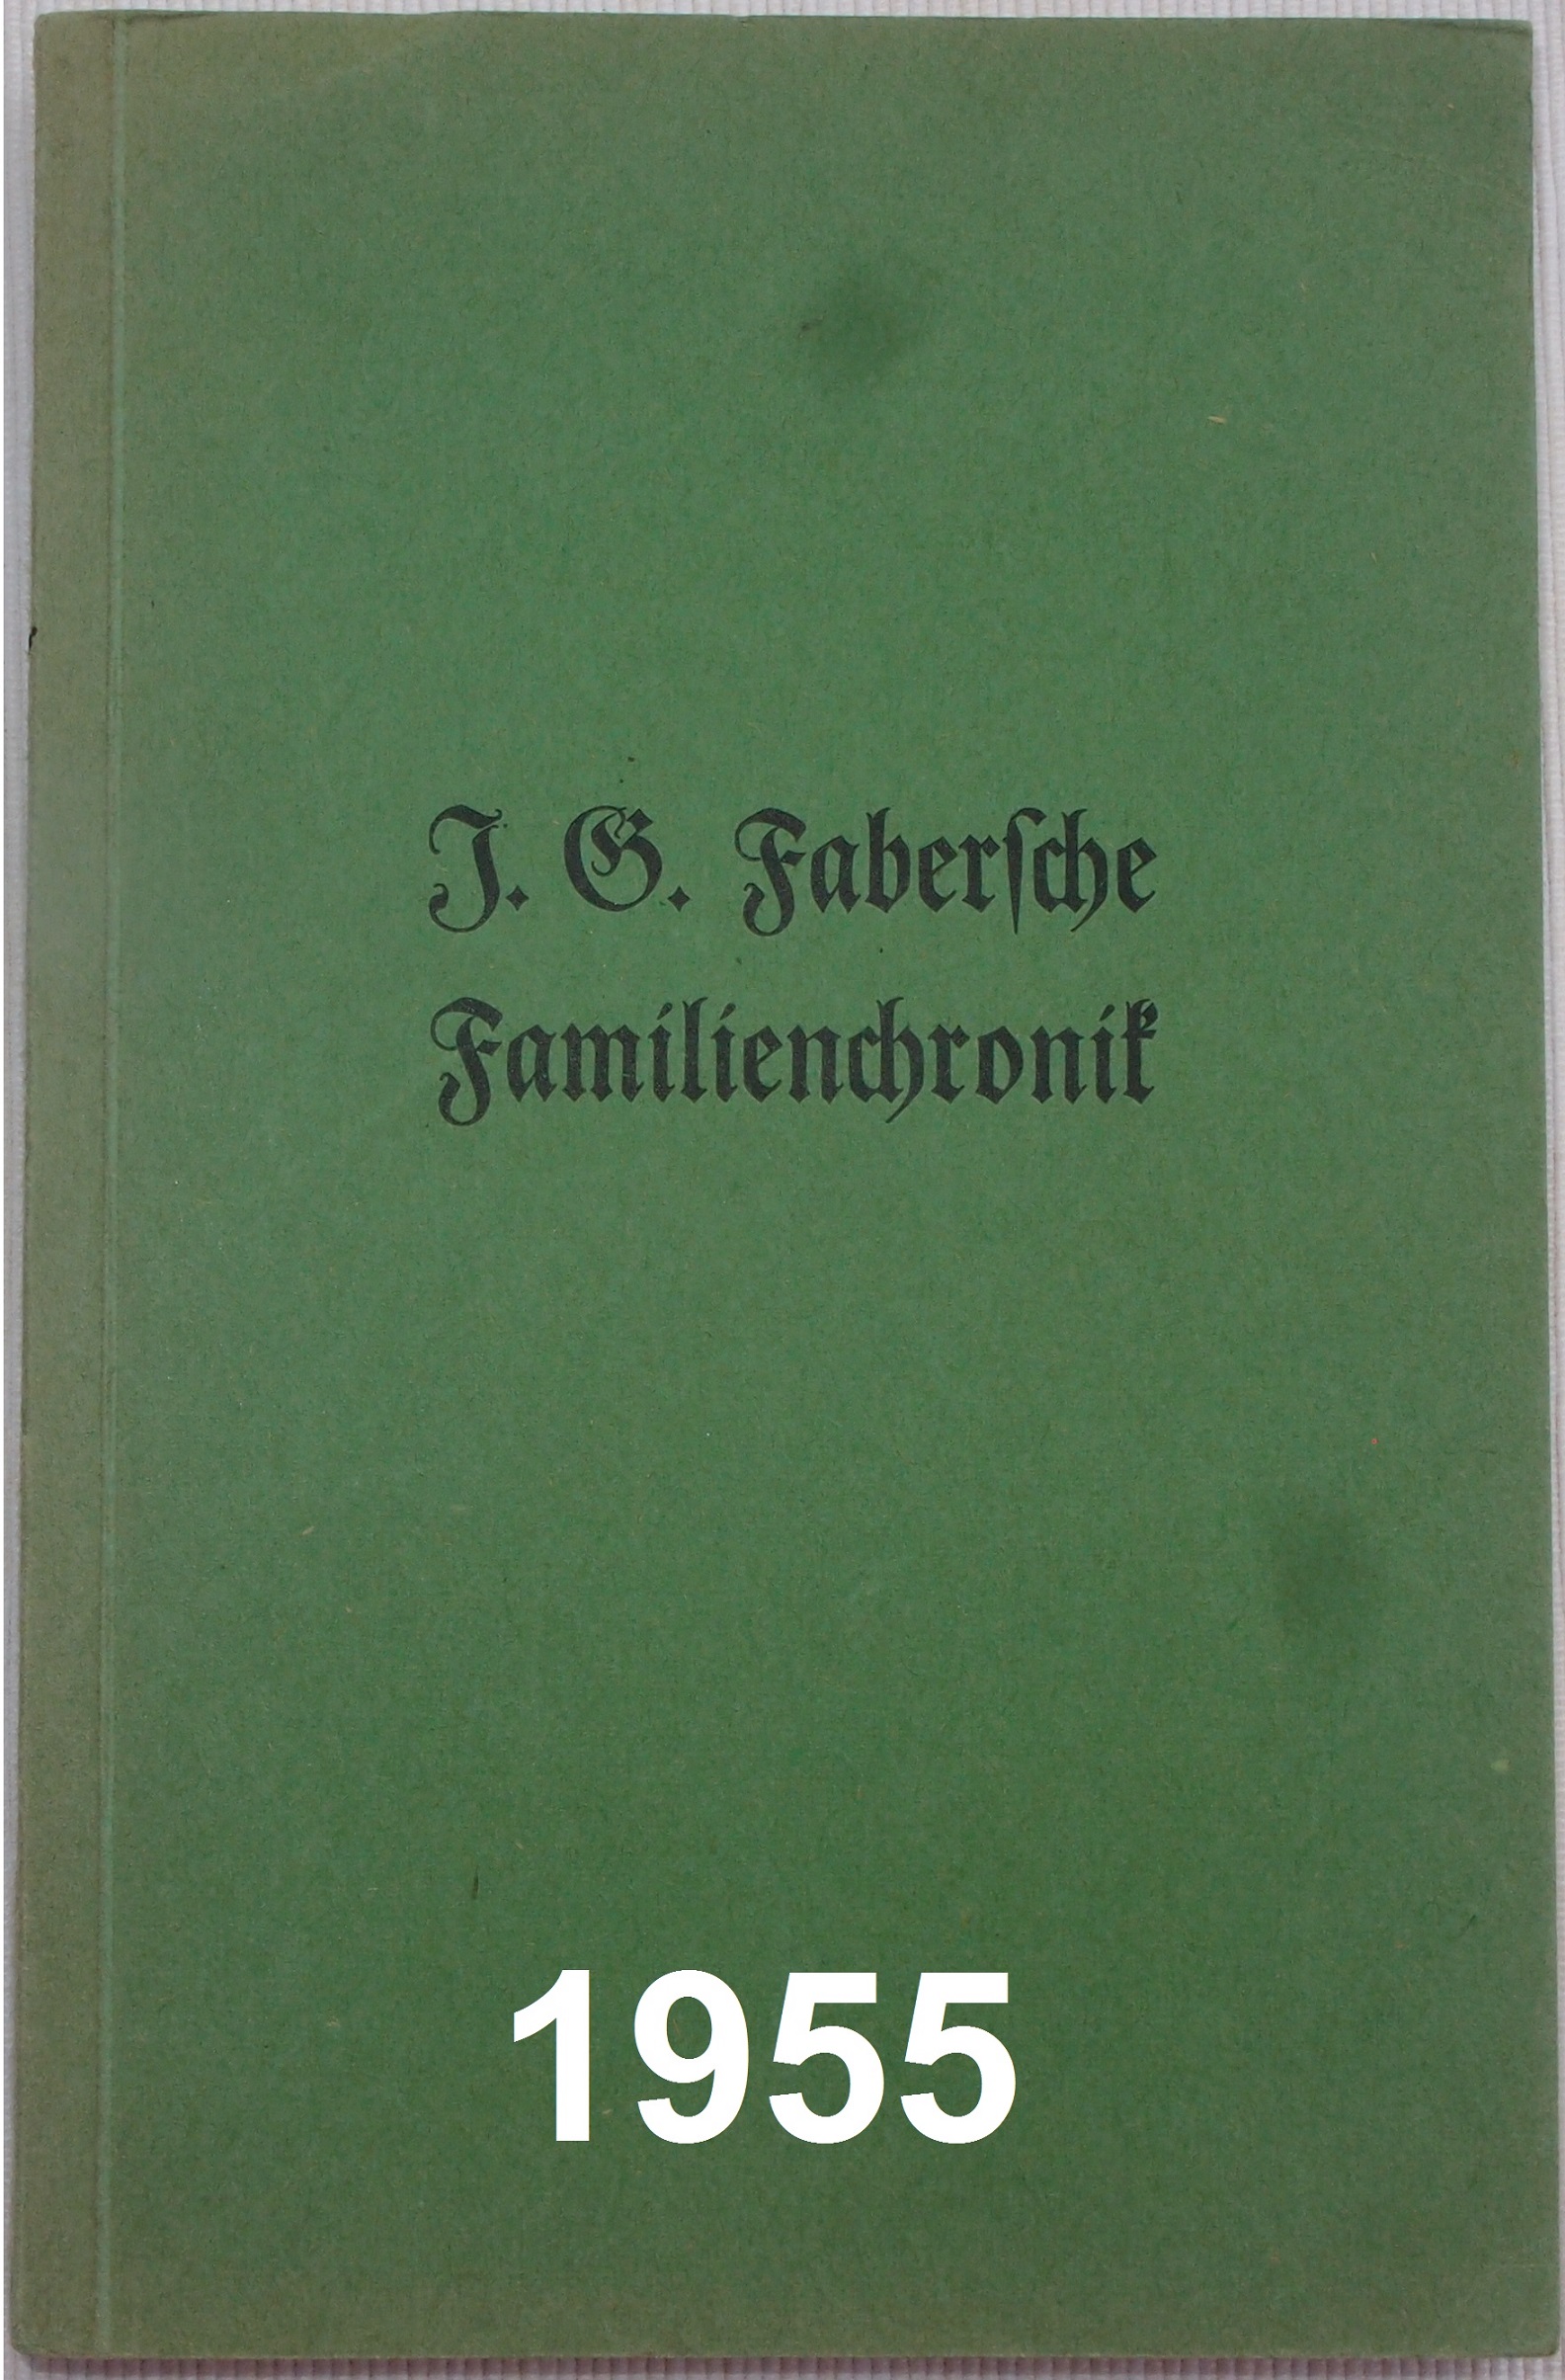 2018 08 10 Faberbuch 1955 B1